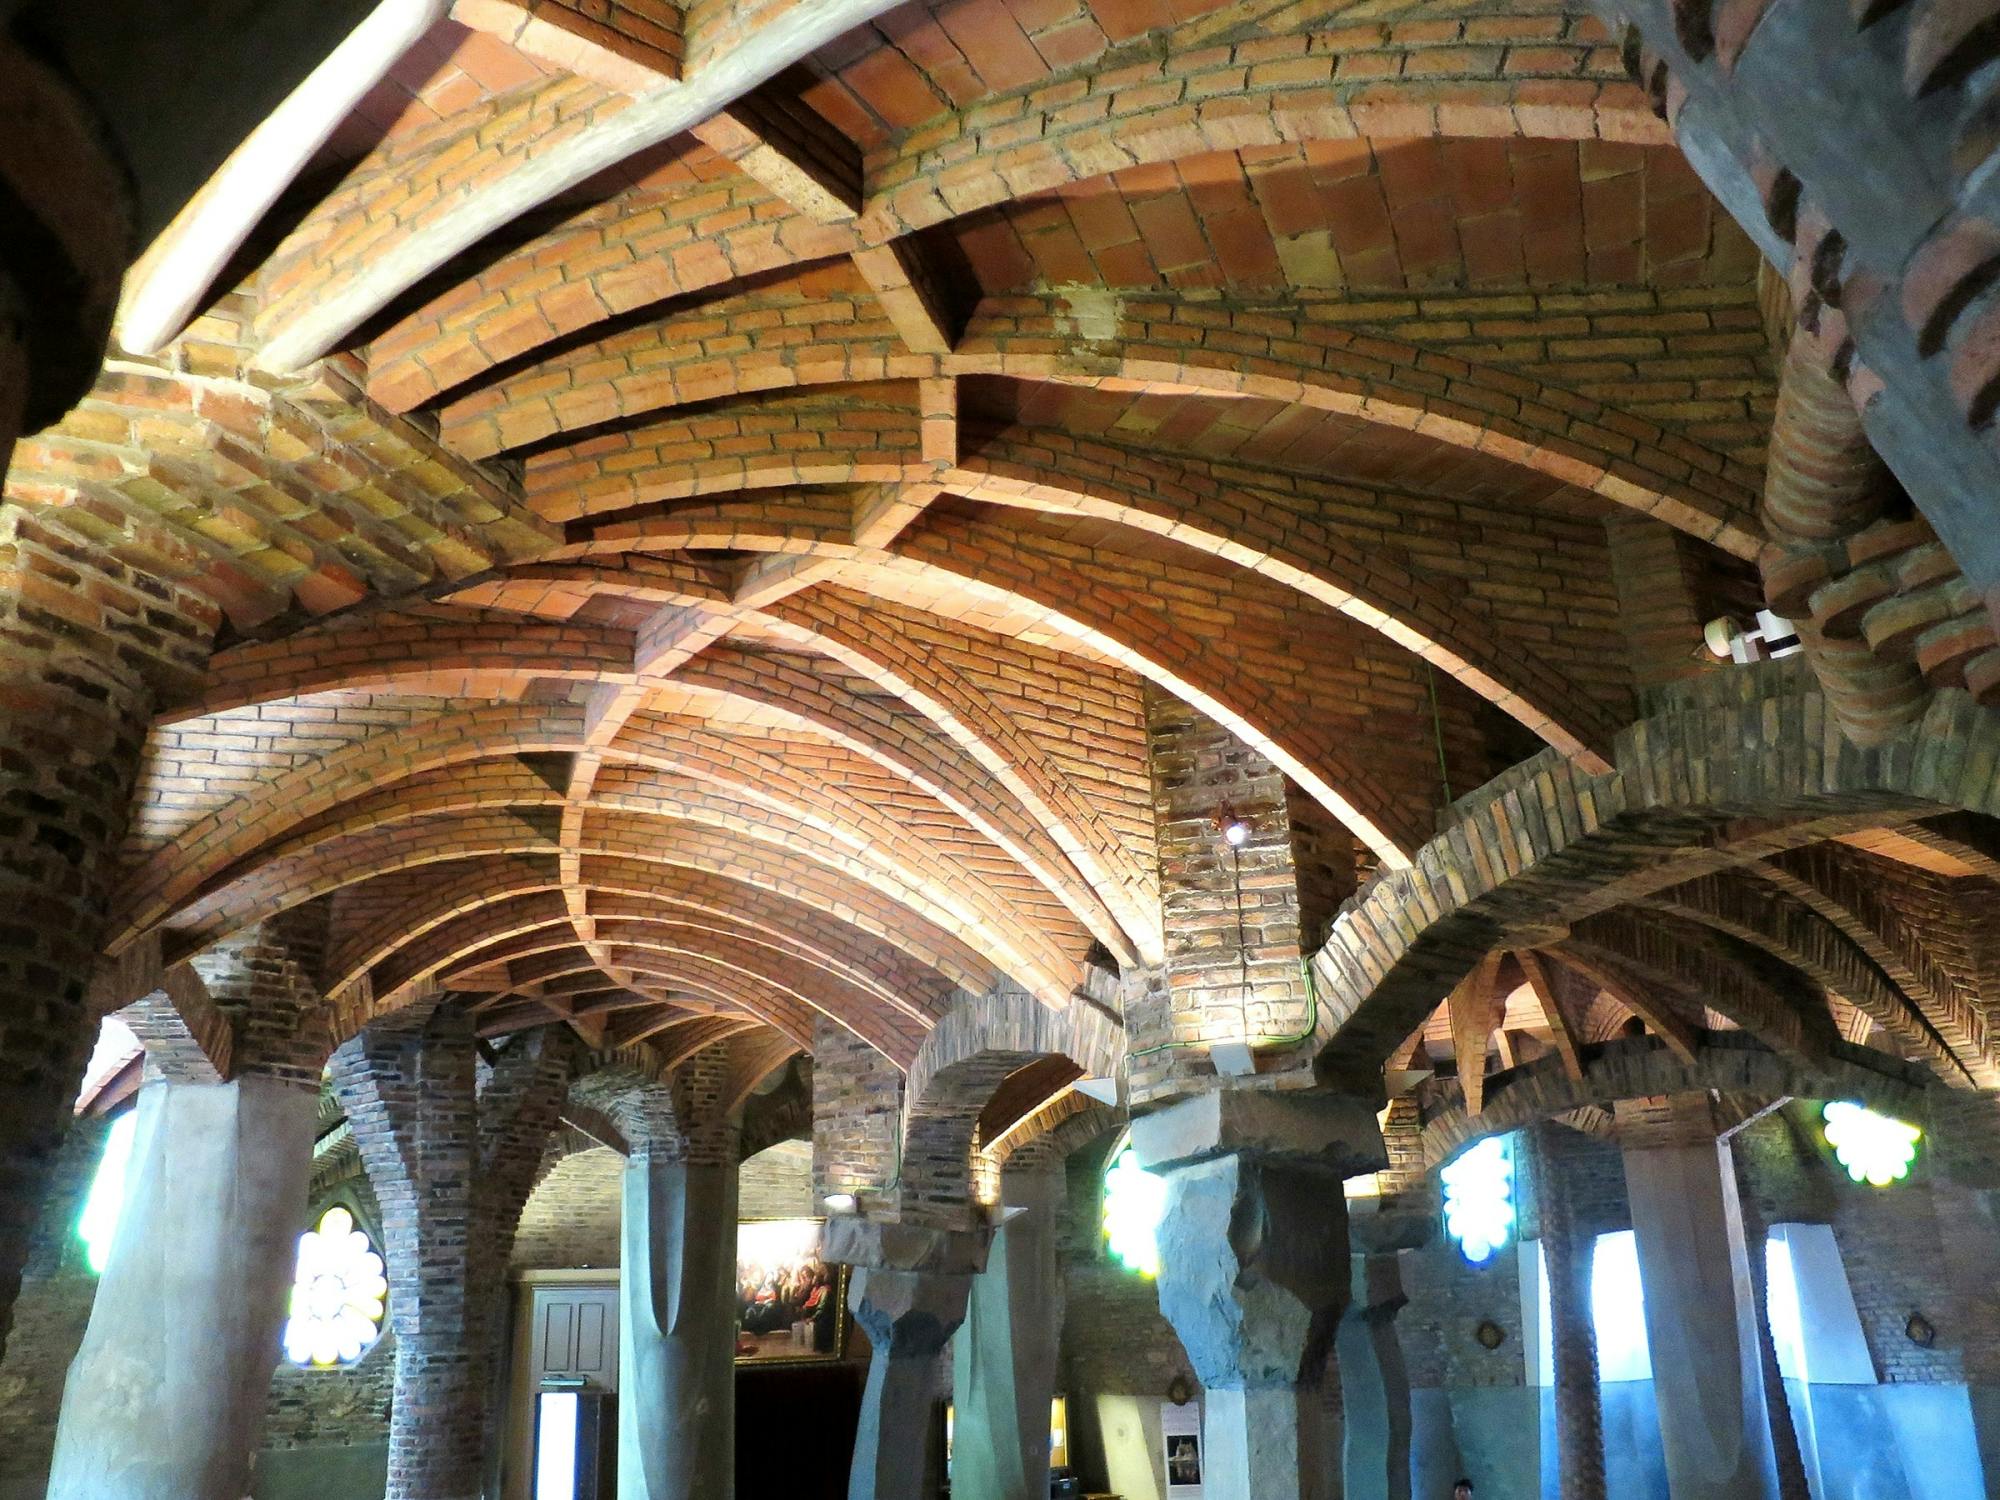 Visita guiada a la Cripta de Gaudí en la Colonia Güell